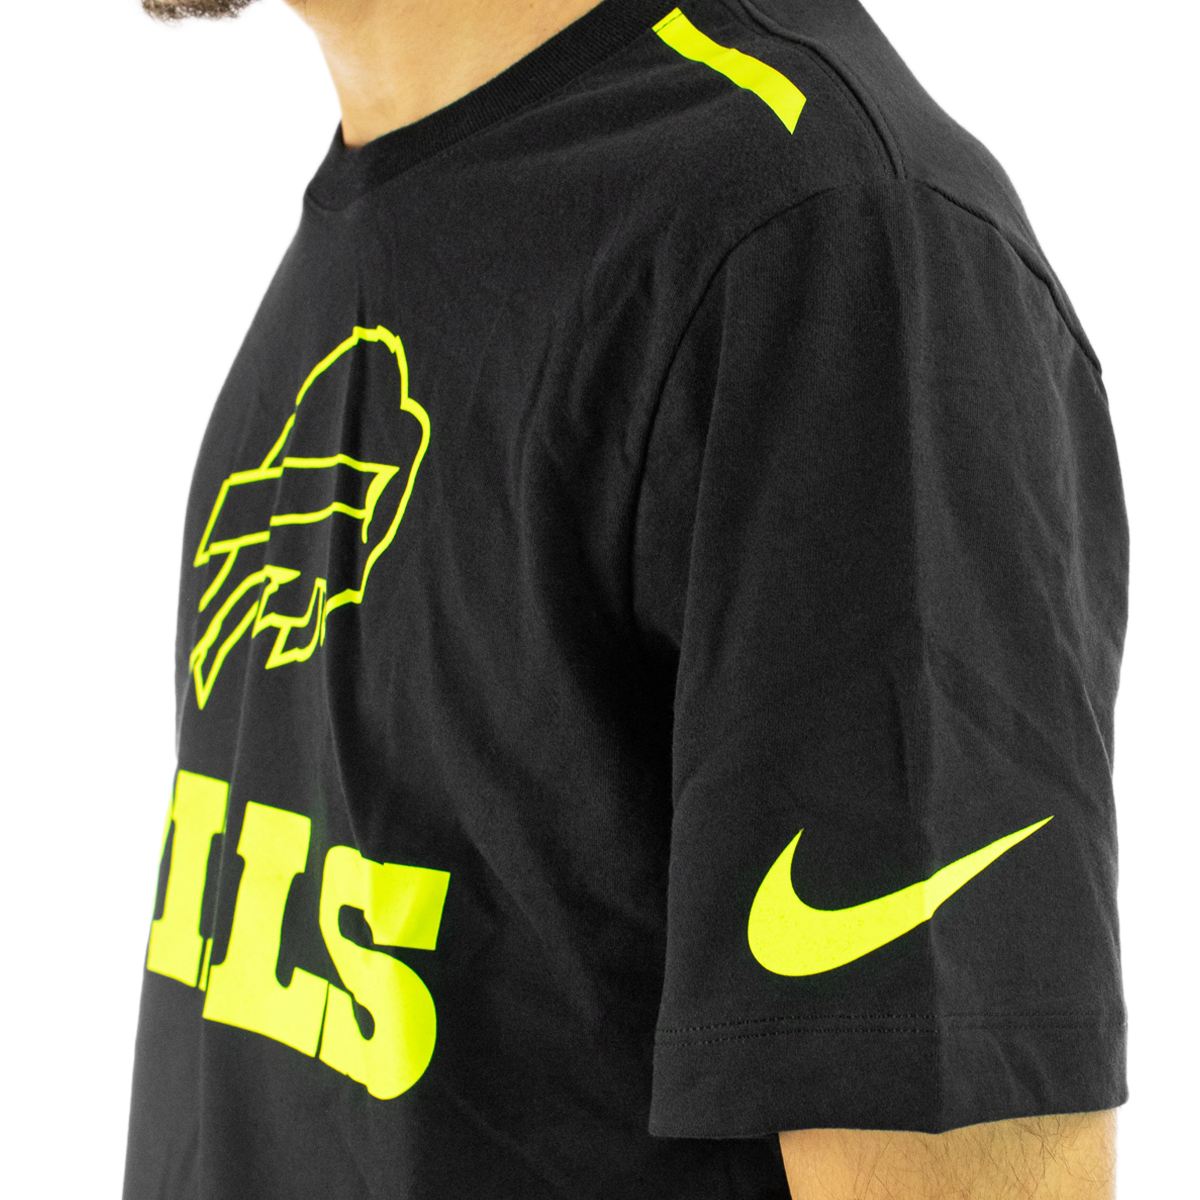 Nike Buffalo Bills NFL Volt Dri-Fit Cotton T-Shirt 00CC-00A-81-04C-